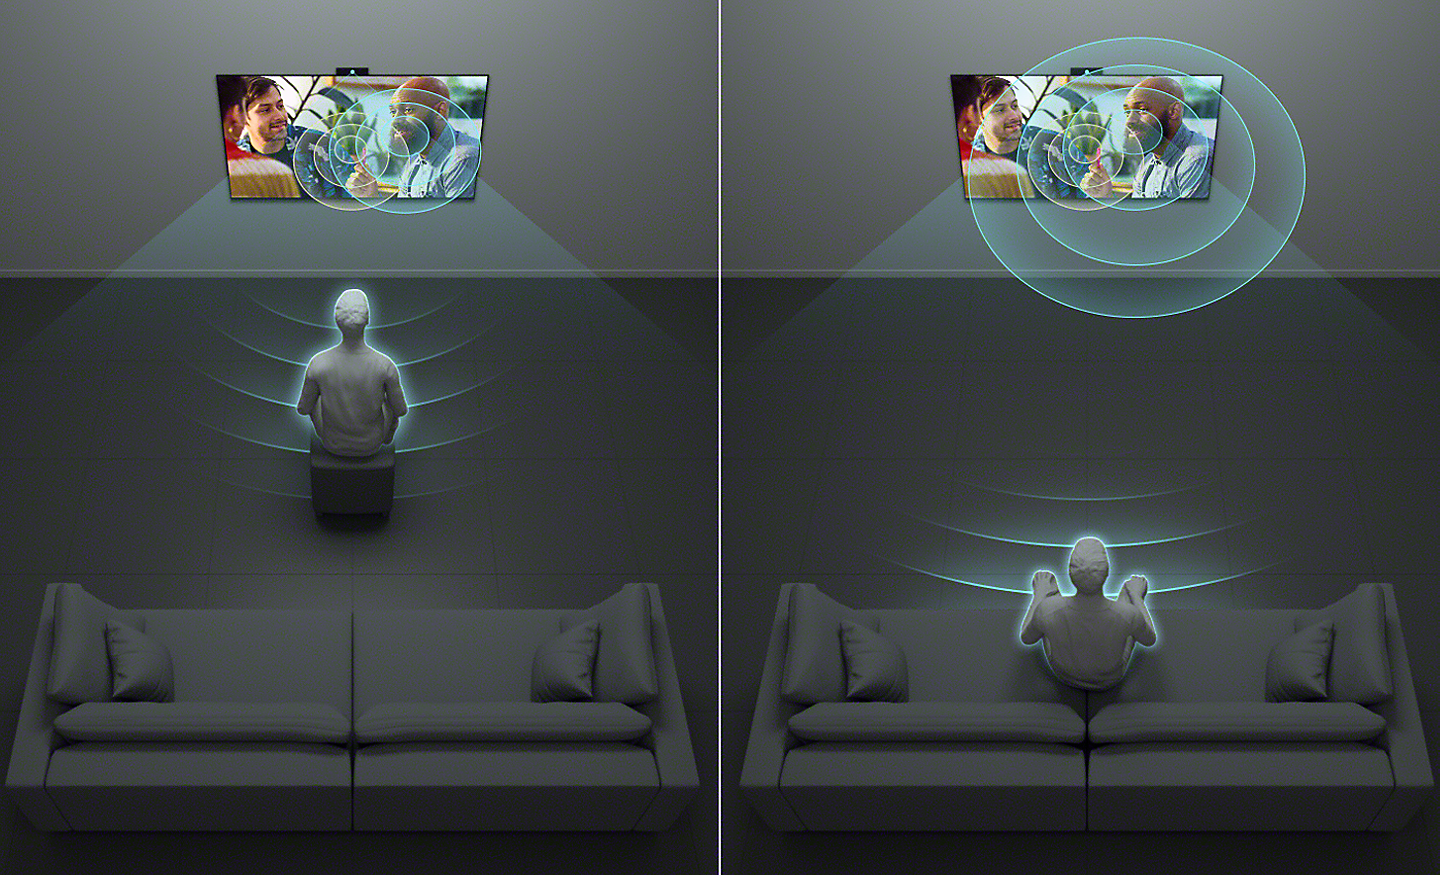 Hình ảnh đồ họa chia đôi màn hình, thể hiện một người ngồi nghe tiếng TV ở ngay gần còn một người ngồi xa